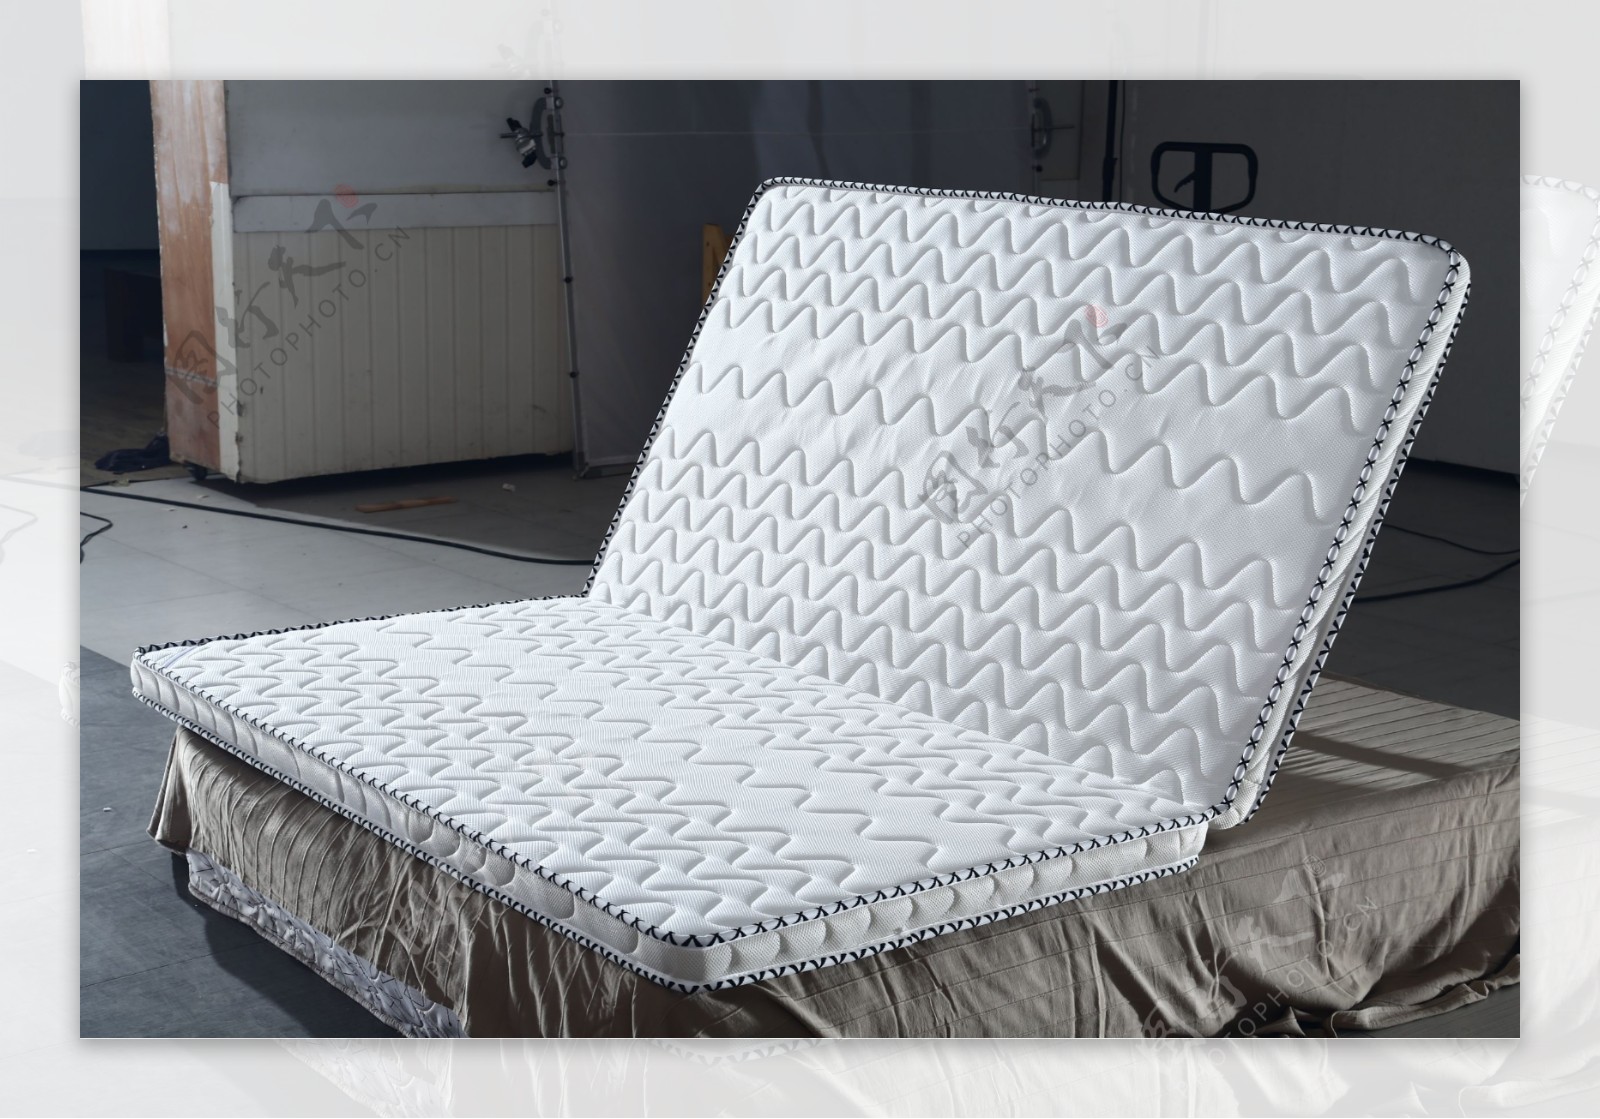 白色折叠床垫